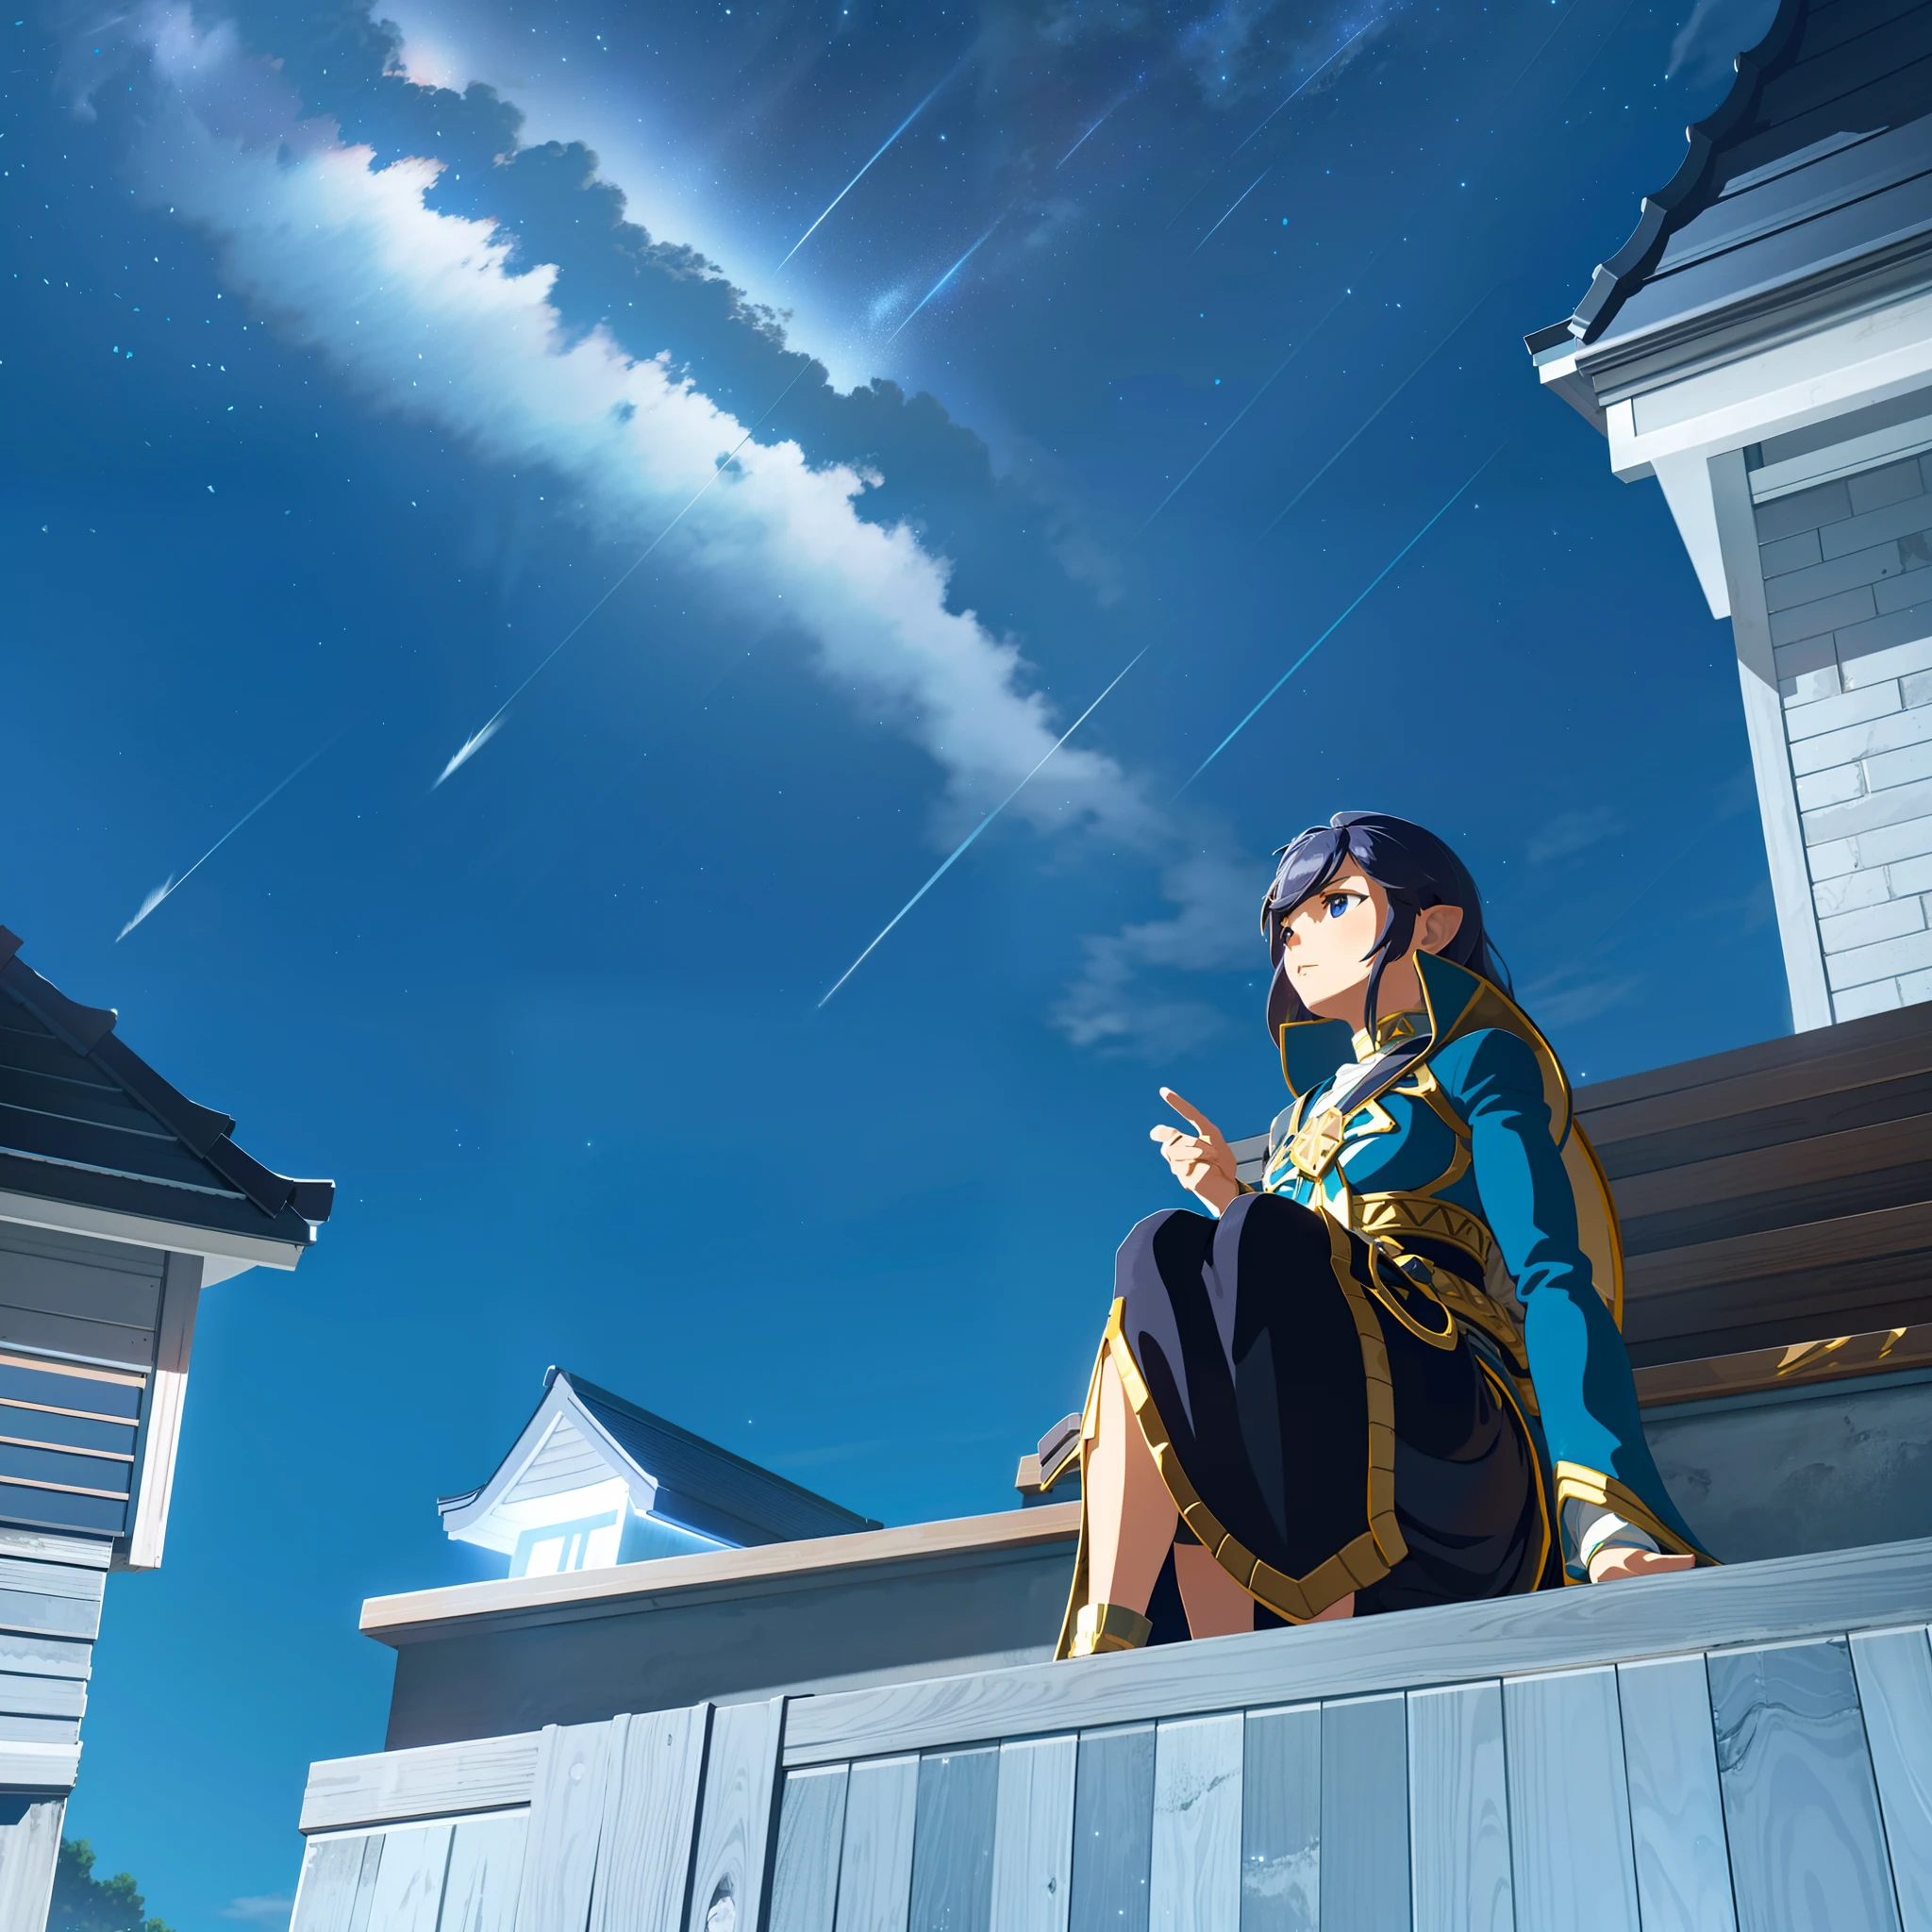 晚上，A girl sits on 屋頂 of a house and looks up at the sky，佈滿星星的天空，一顆閃亮的流星劃過天空， 全景， 风景， 地平線， 屋頂， 坐在屋顶上， 風，8K